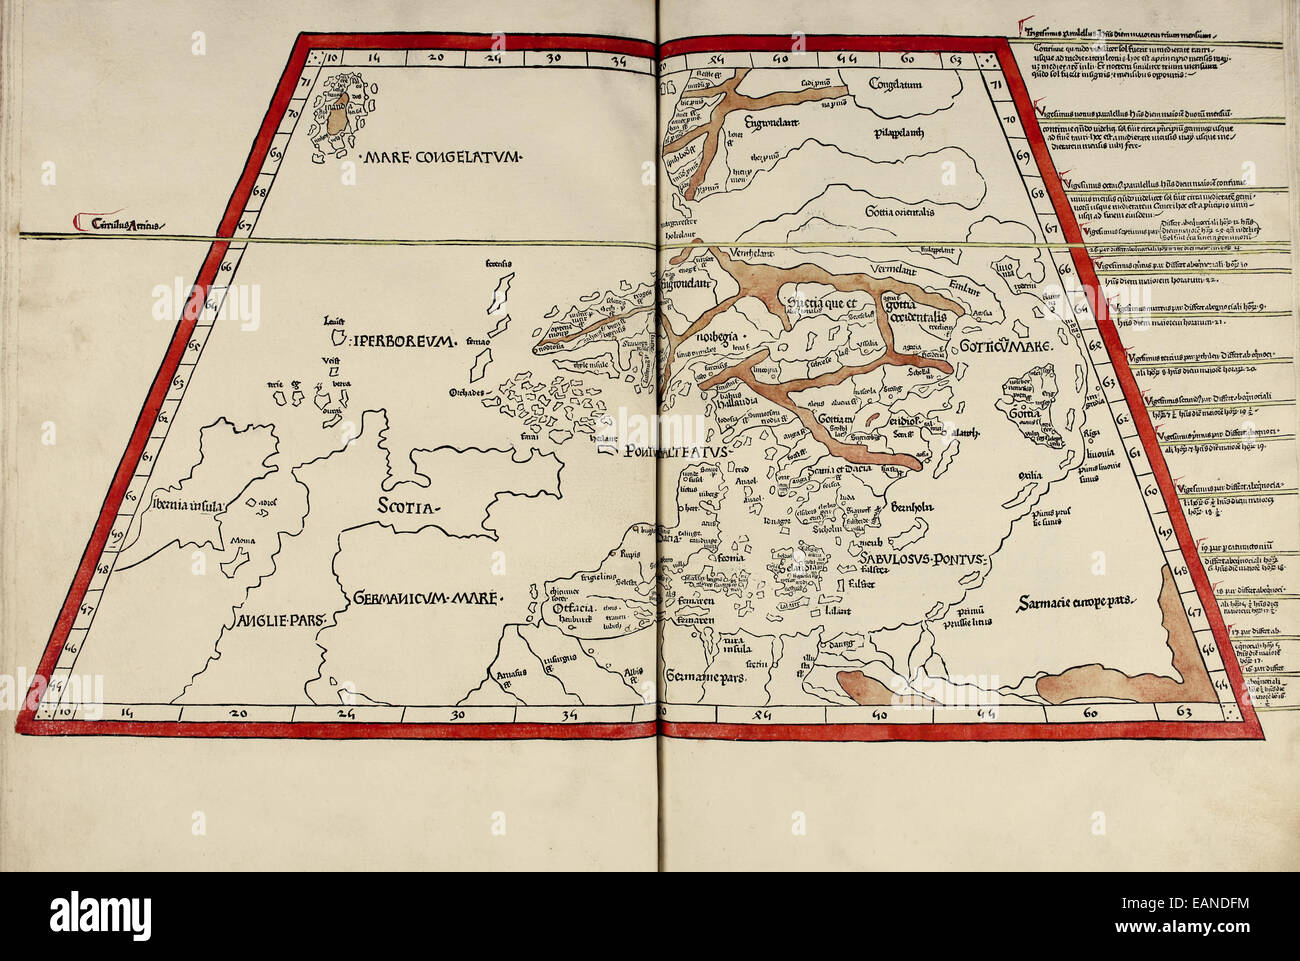 Karte von Nordeuropa aus "Cosmographia" von Claudius Ptolemäus (Ptolemaeus) (90-168AD). Siehe Beschreibung für mehr Informationen. Stockfoto